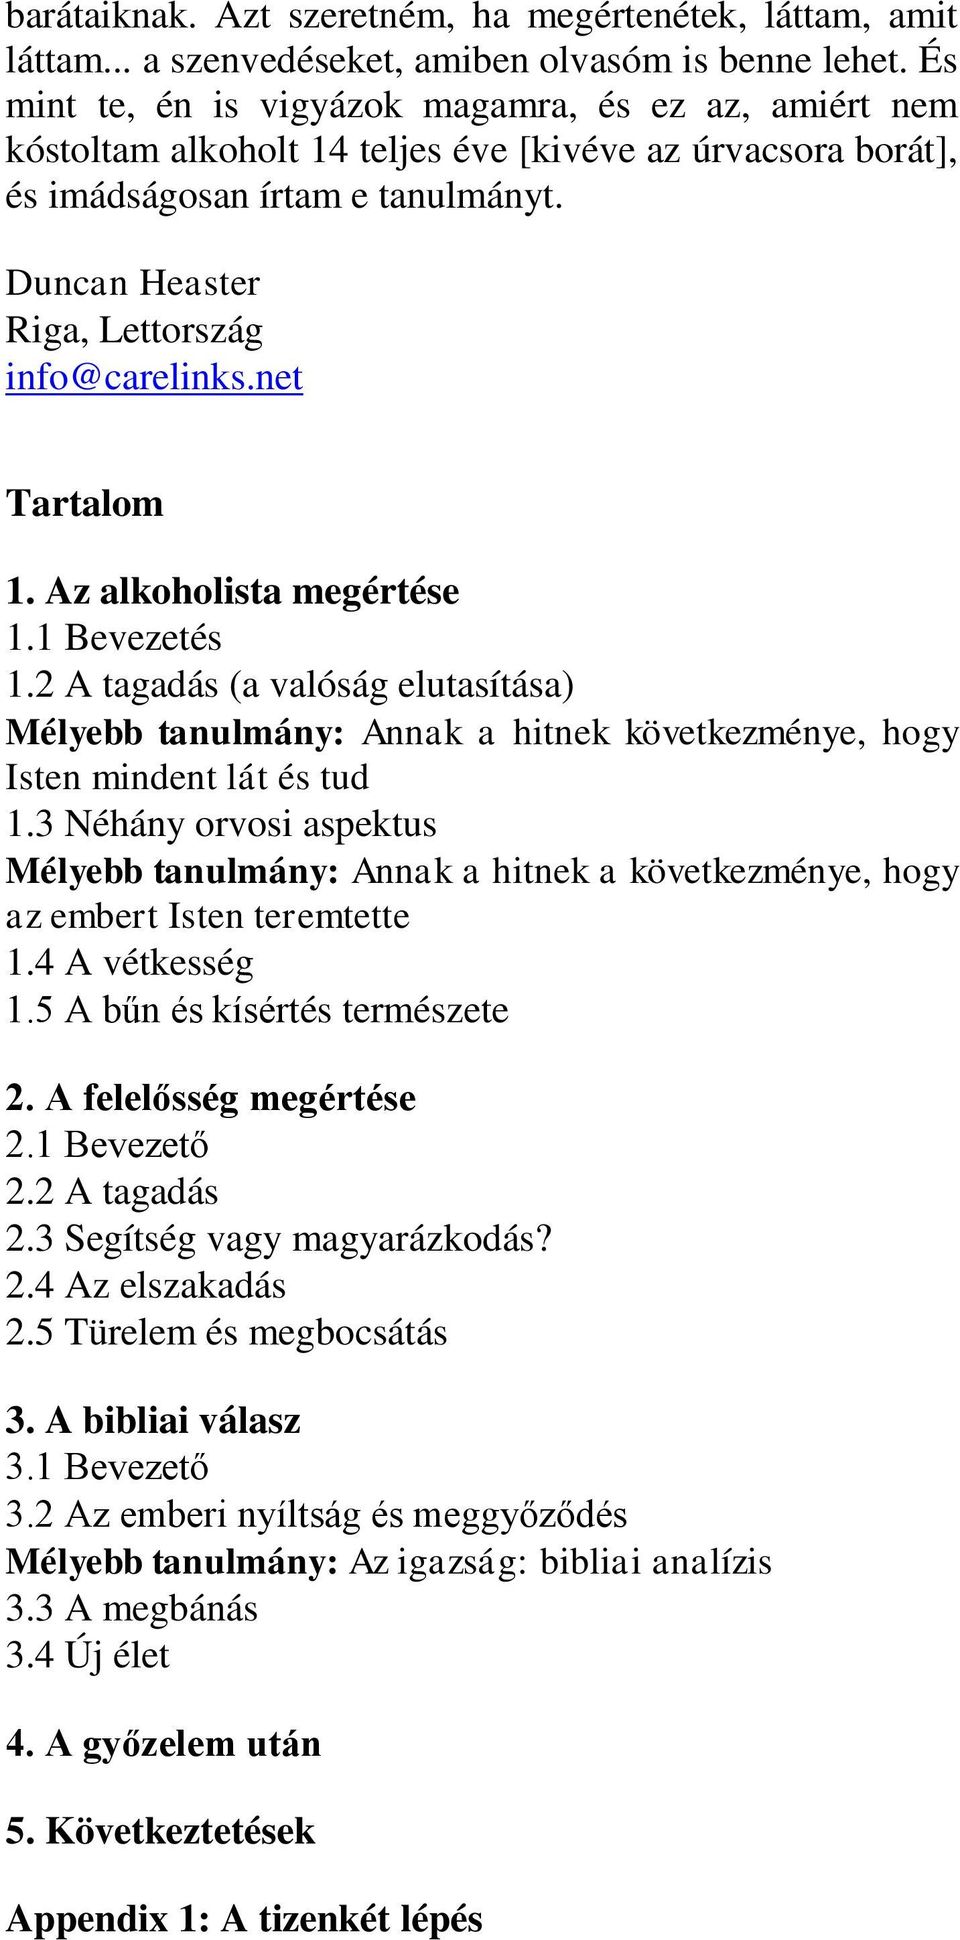 Duncan Heaster Riga, Lettország info@carelinks.net Tartalom 1. Az alkoholista megértése 1.1 Bevezetés 1.